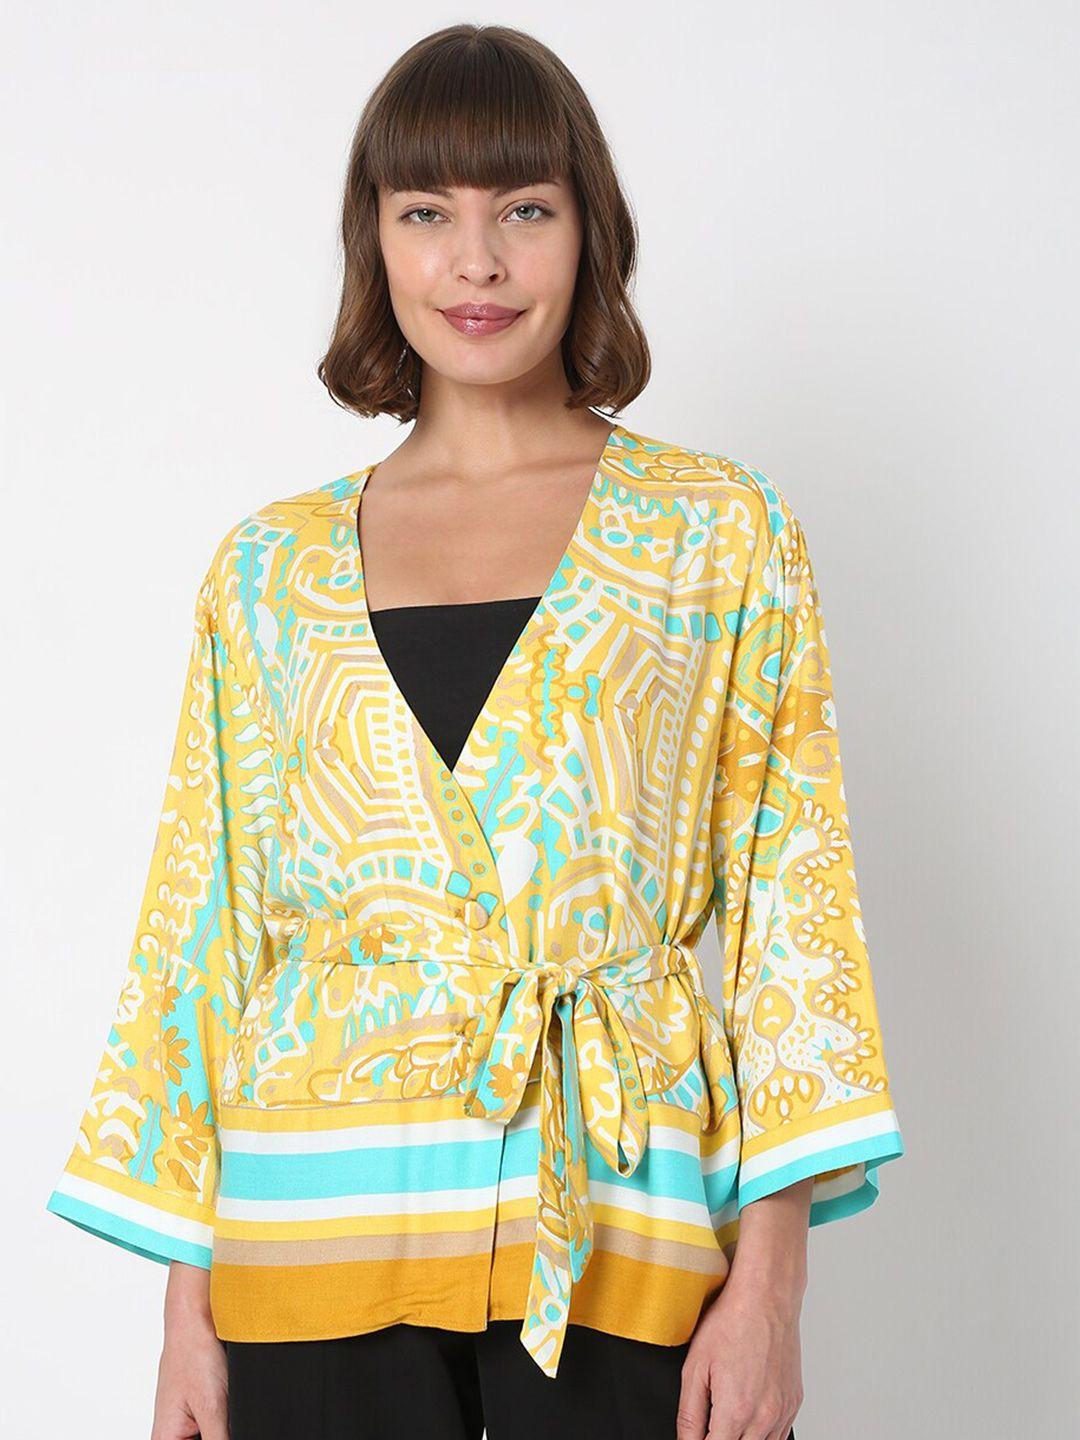 vero moda yellow & blue floral print wrap top